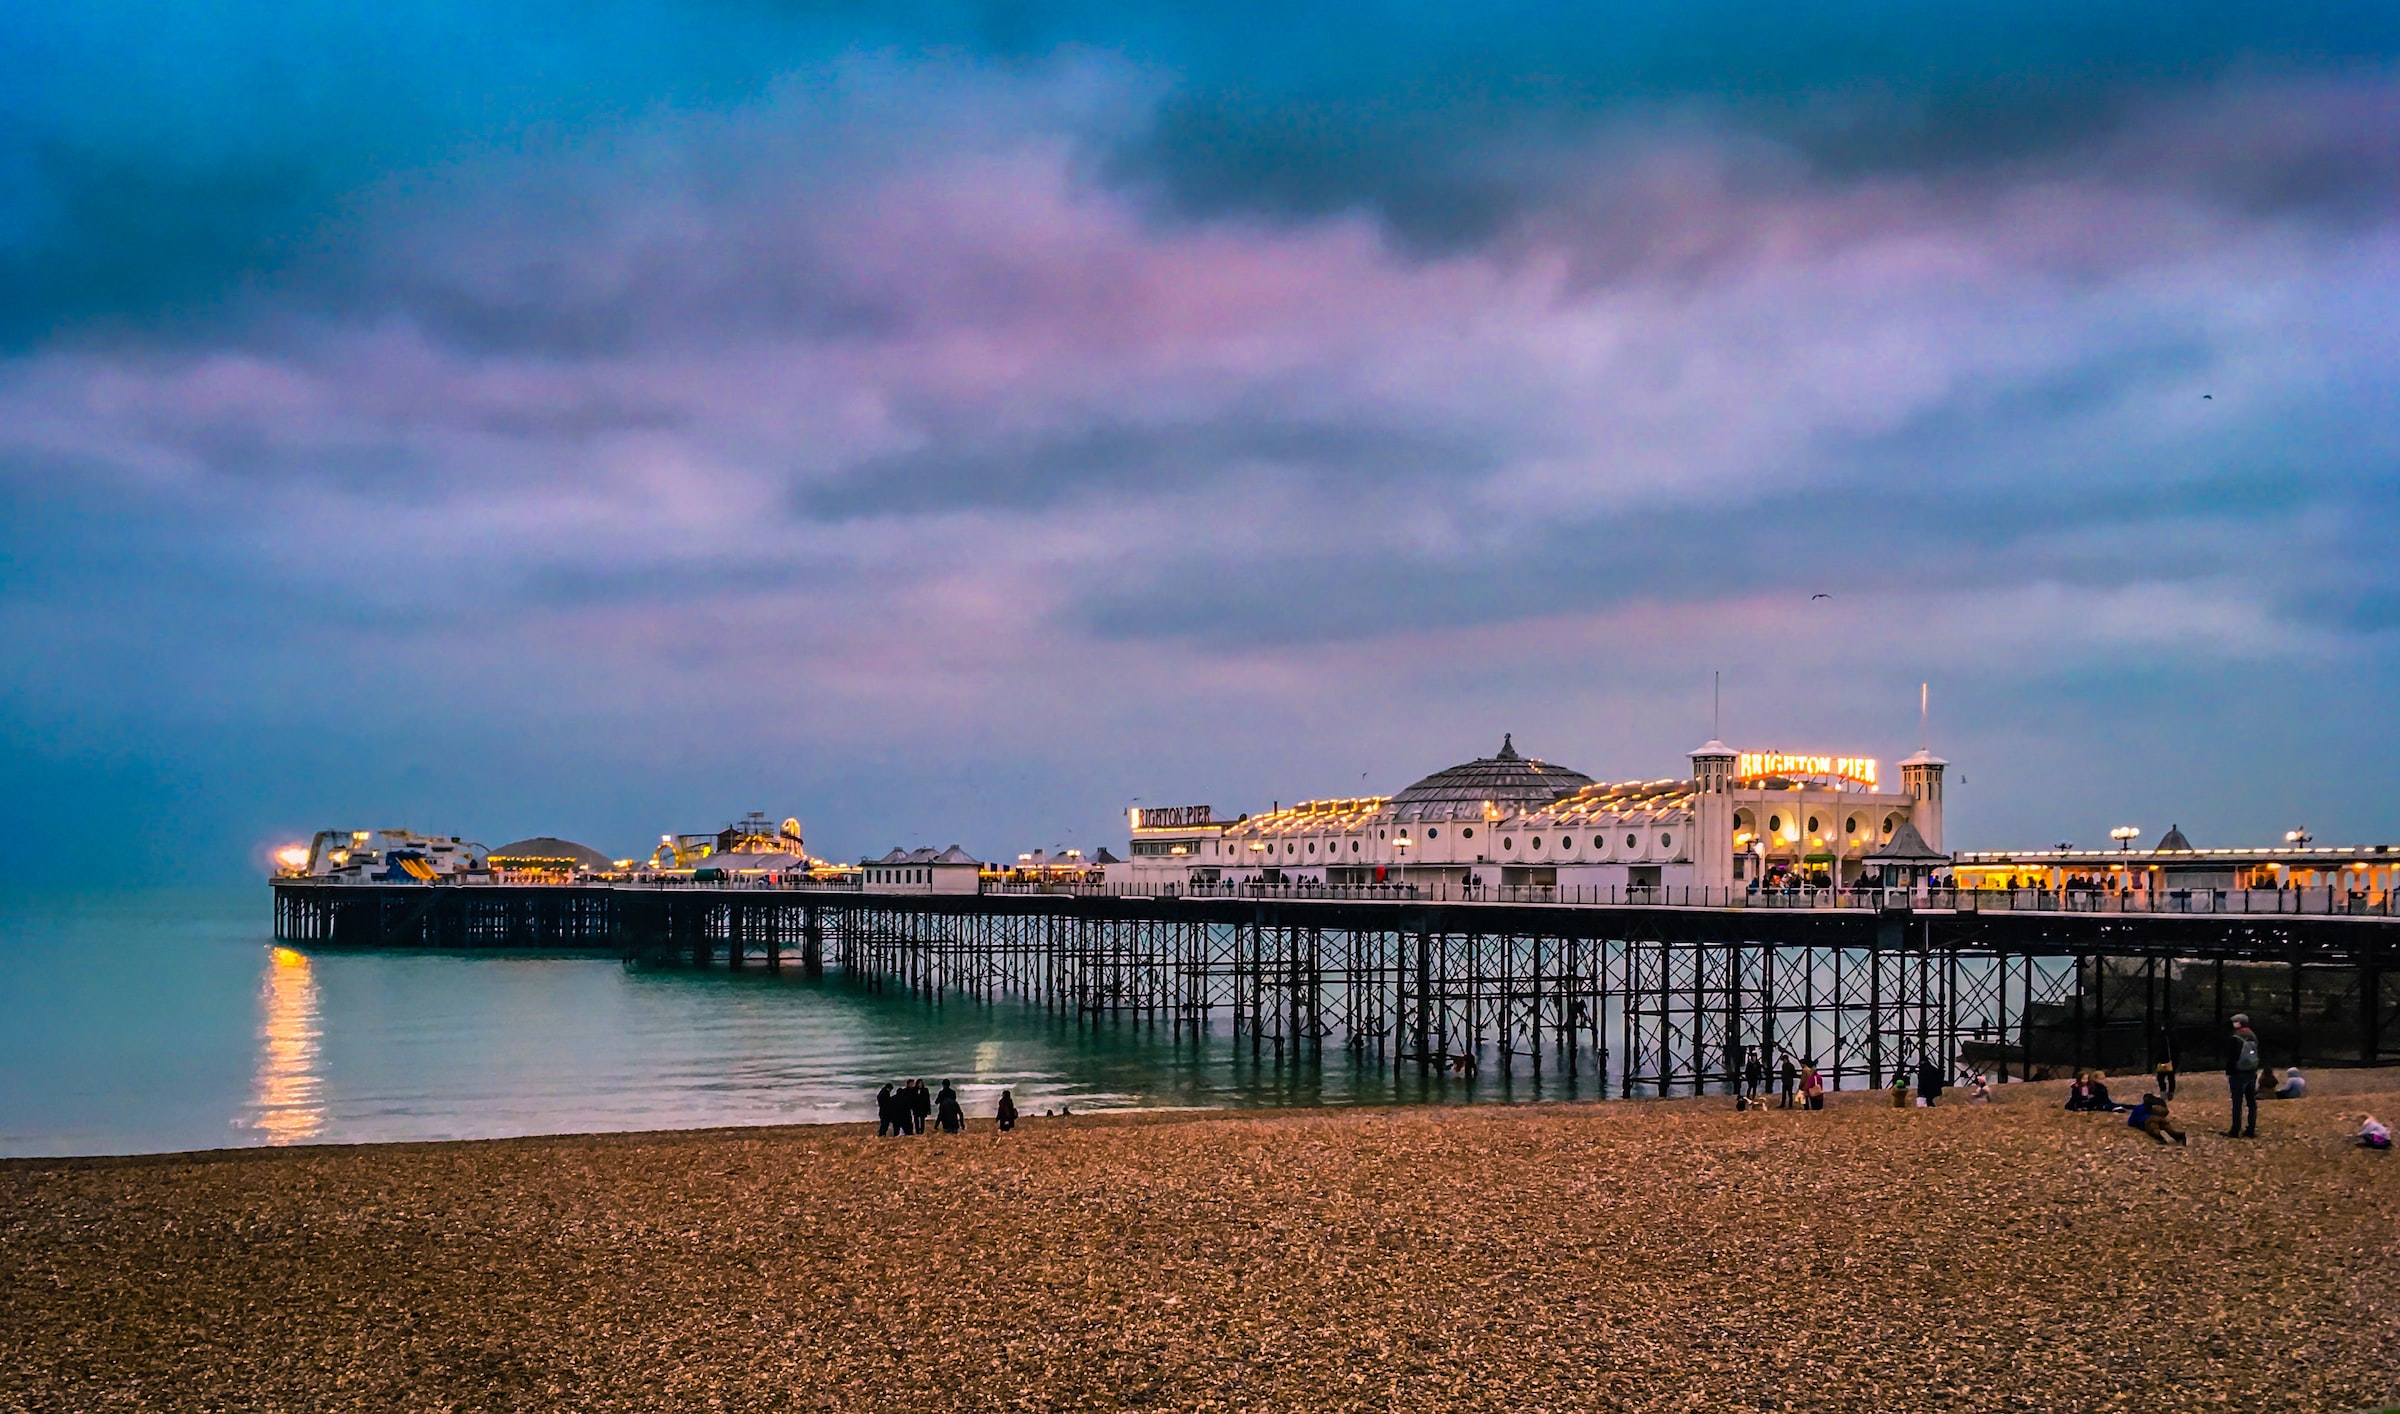 Brighton Pier at dusk